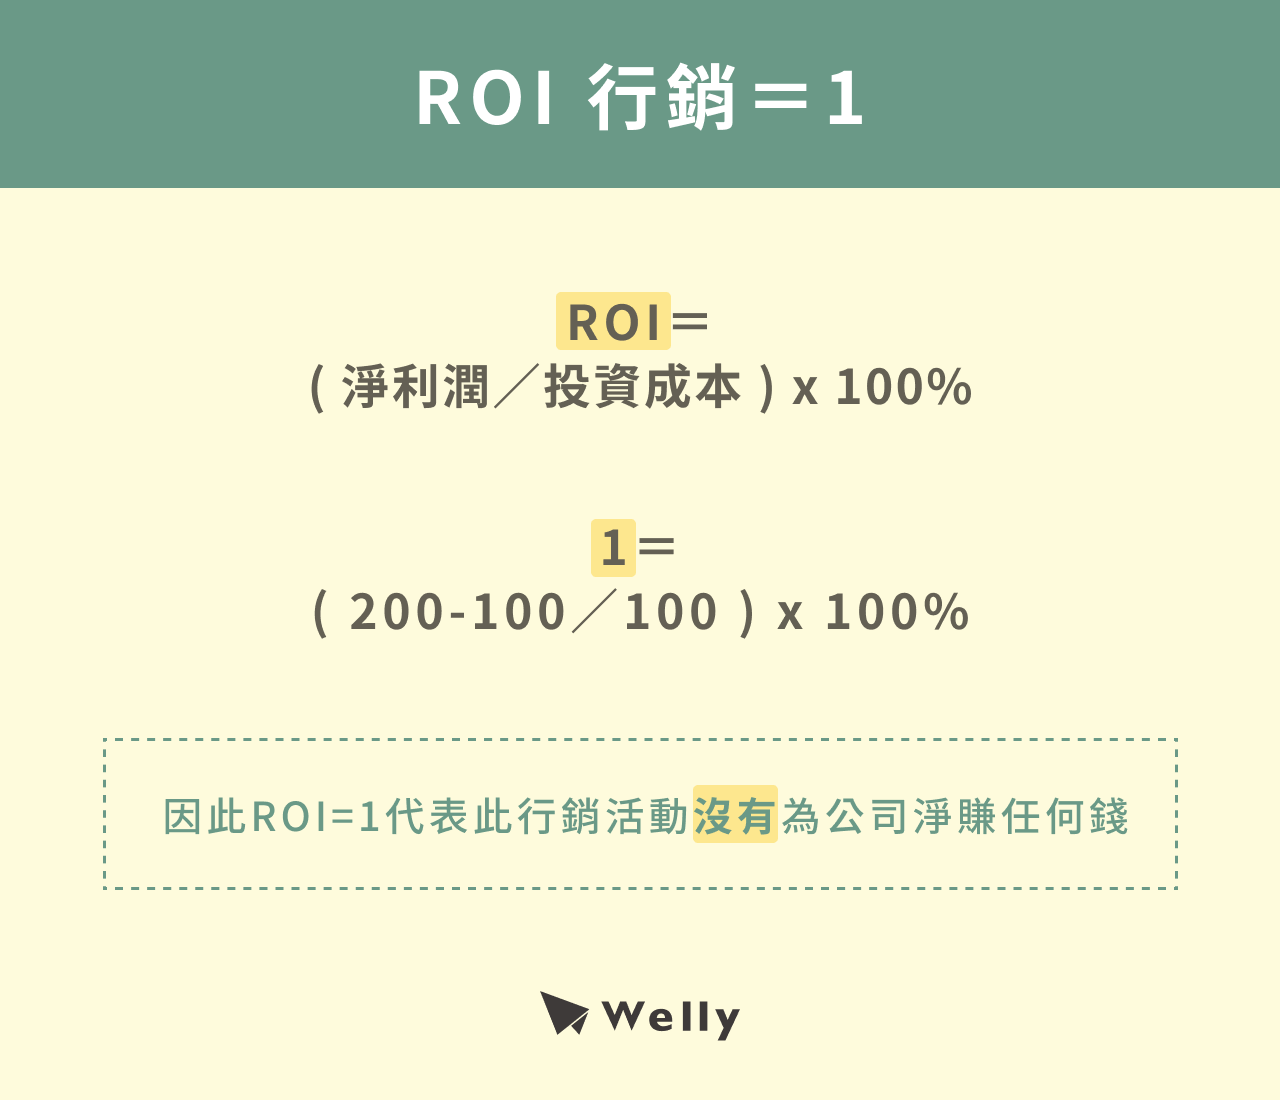 ROI 行銷＝1